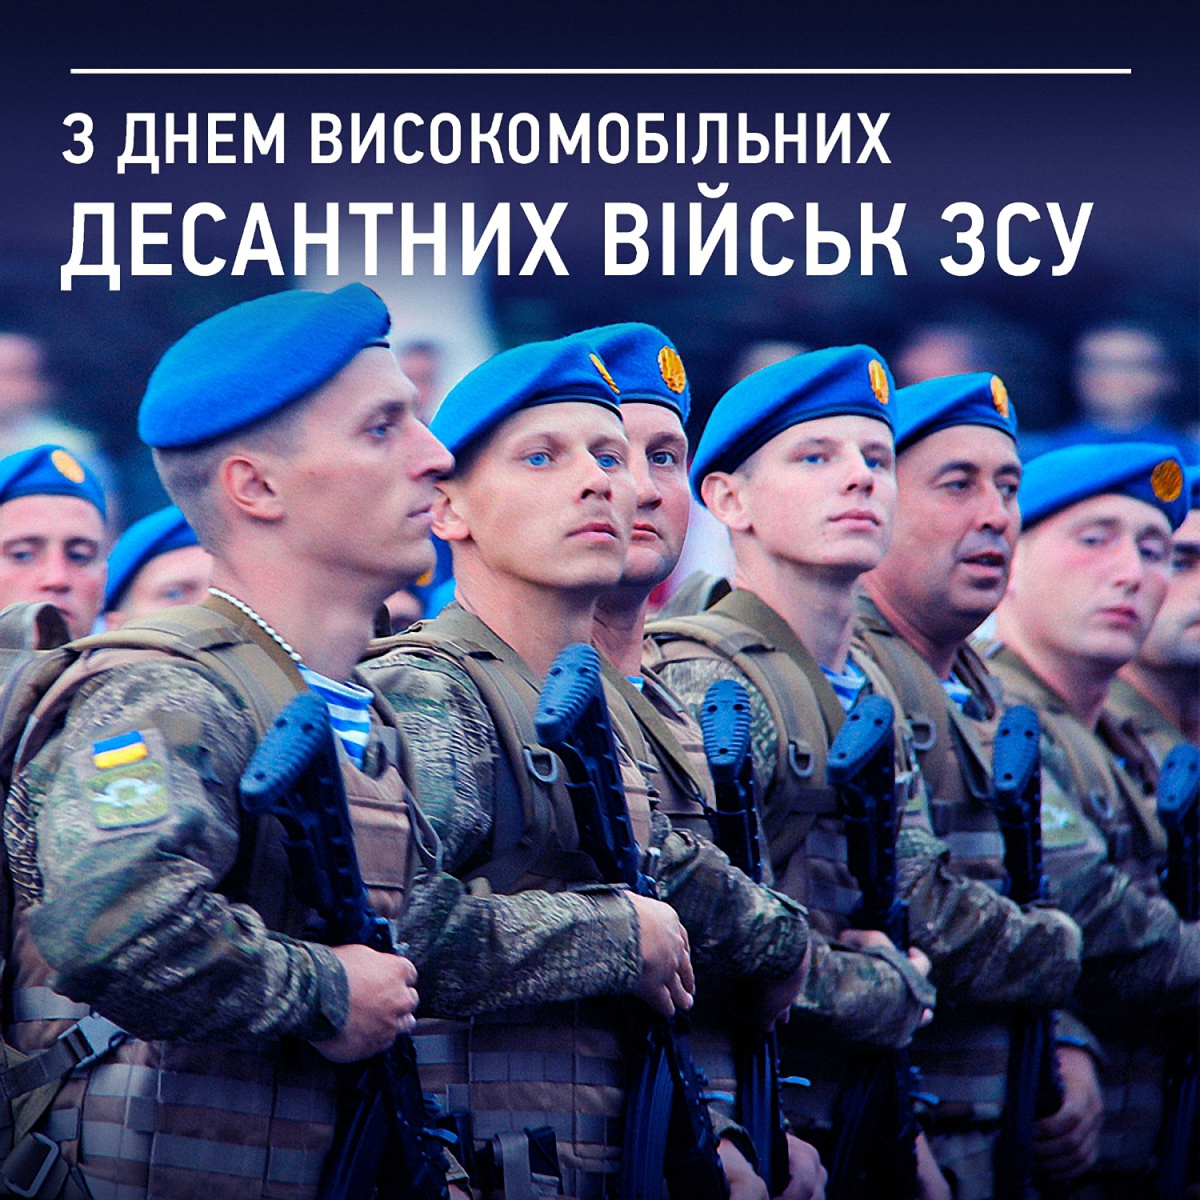 Порошенко: 2295 воинов-десантников награждены за мужество и героизм - фото 1